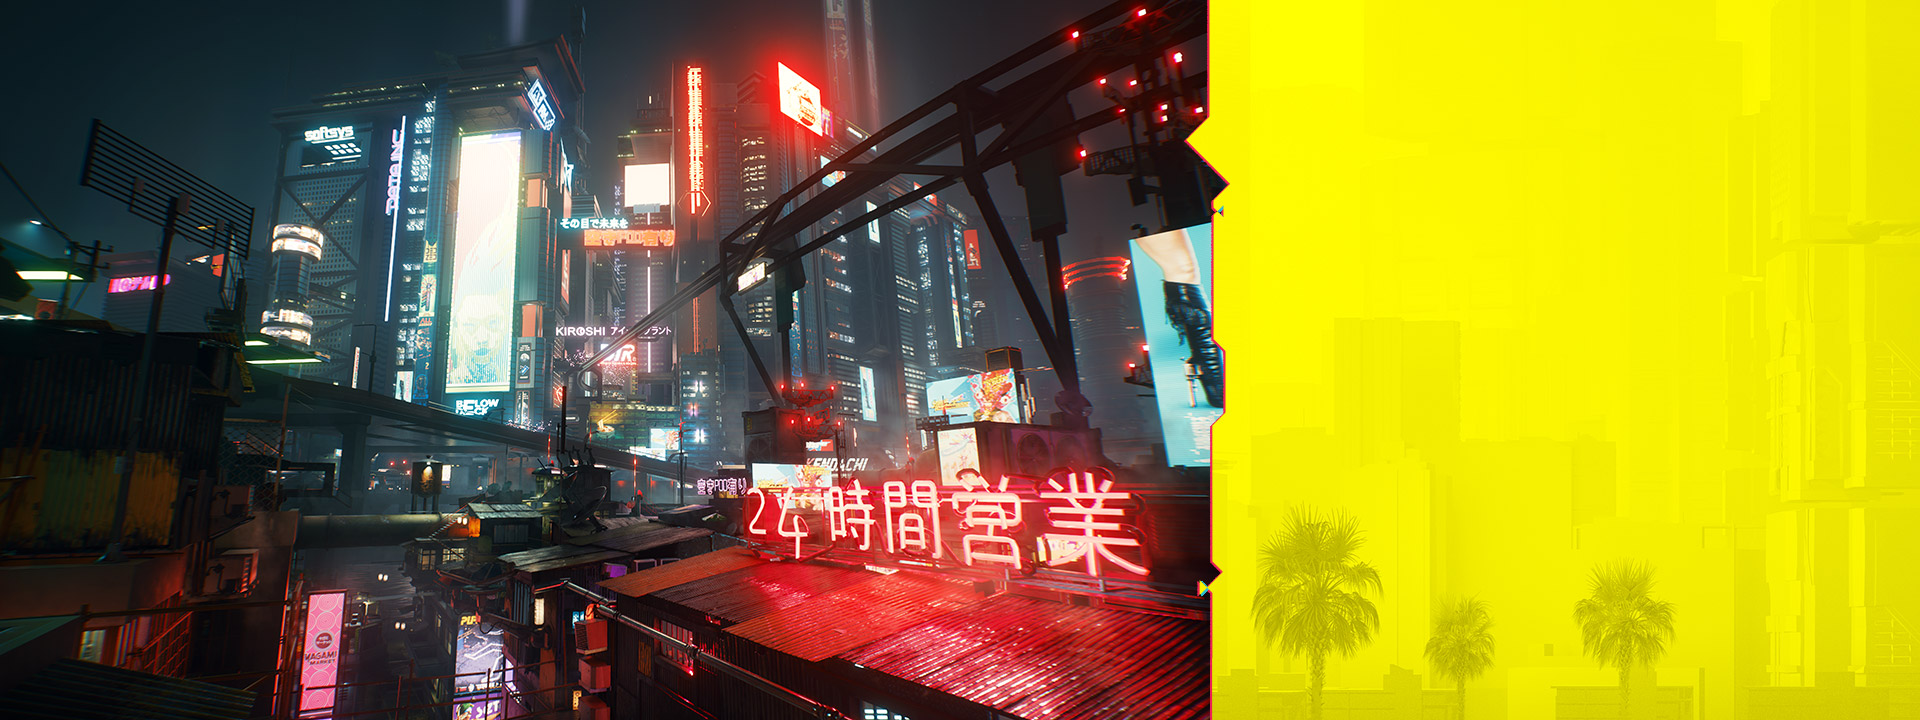 Neonborden in Night City steken 's nachts af tegen een wazig stadsbeeld.